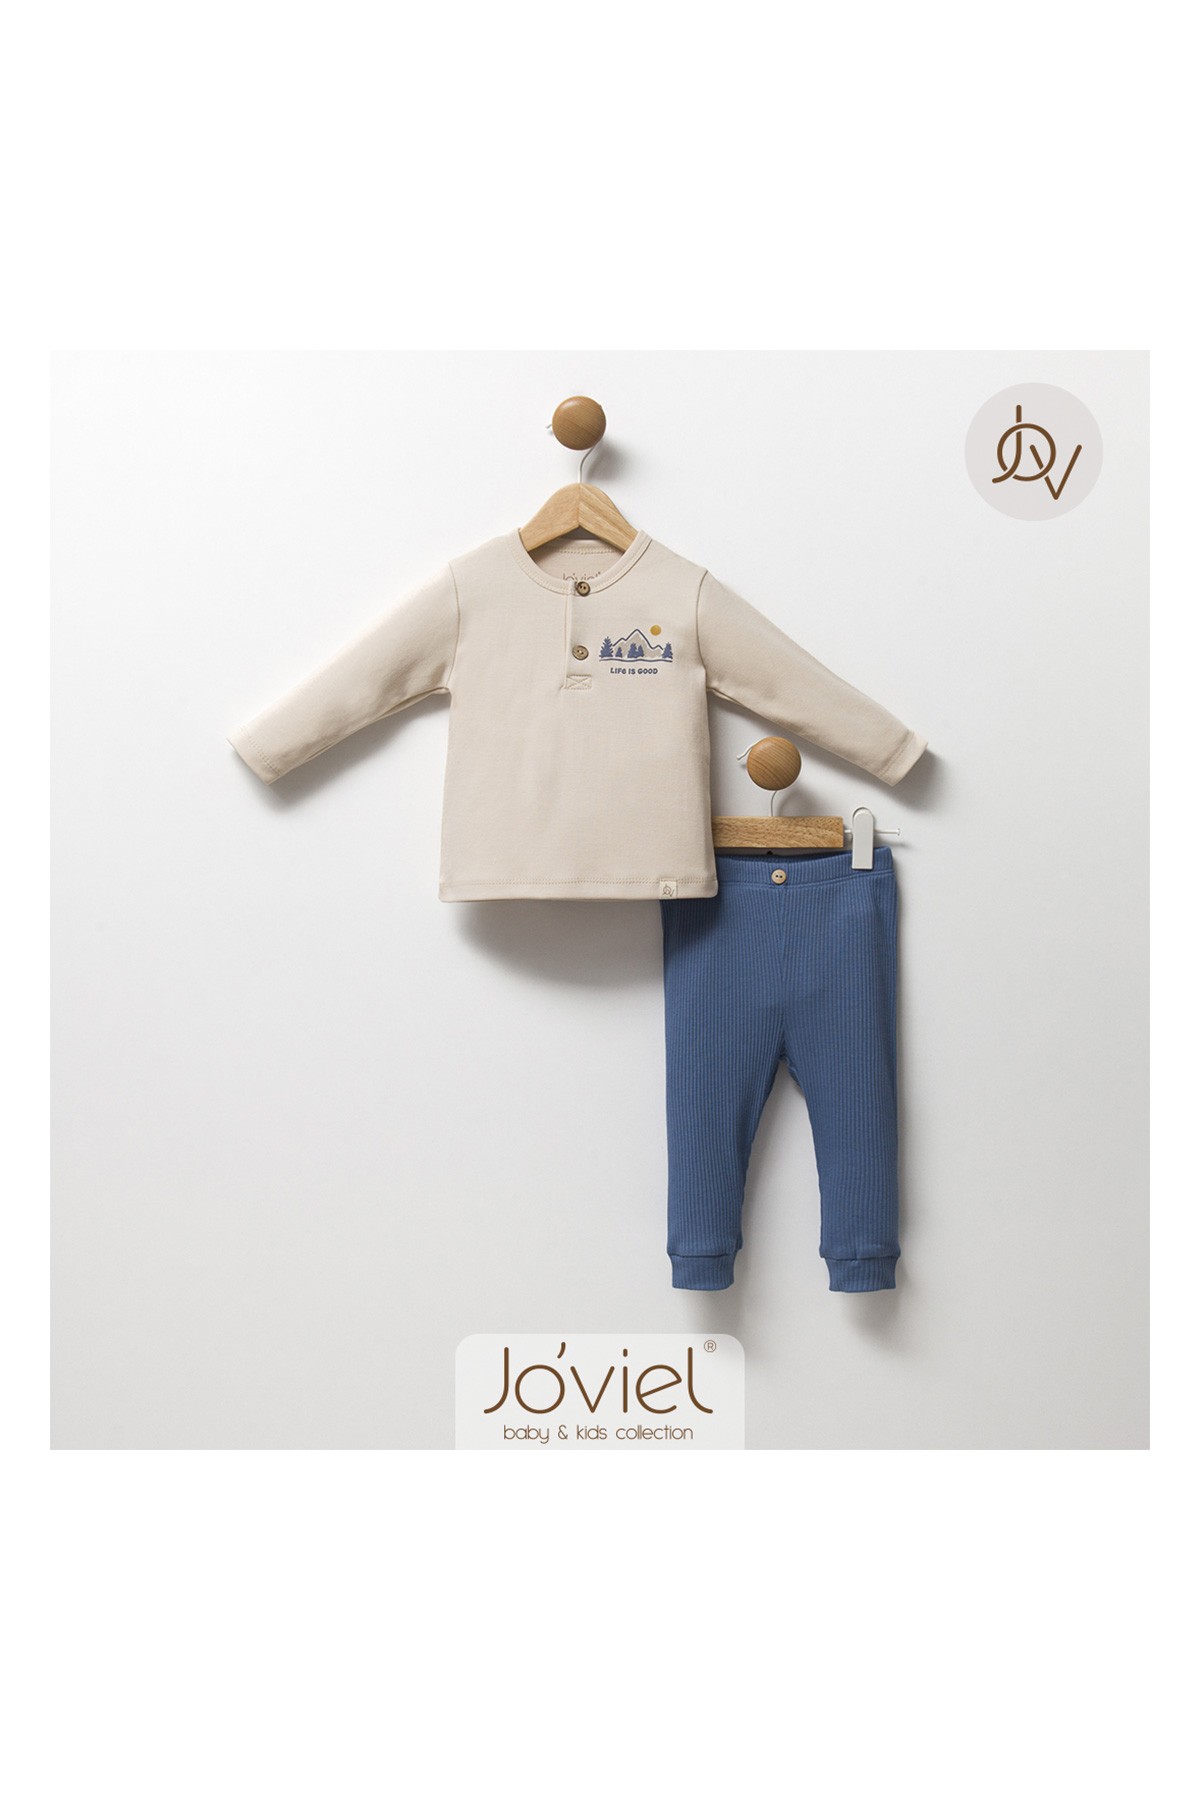 Joviel Baby İkili Pijama Takım Figürlü Bej Mavi